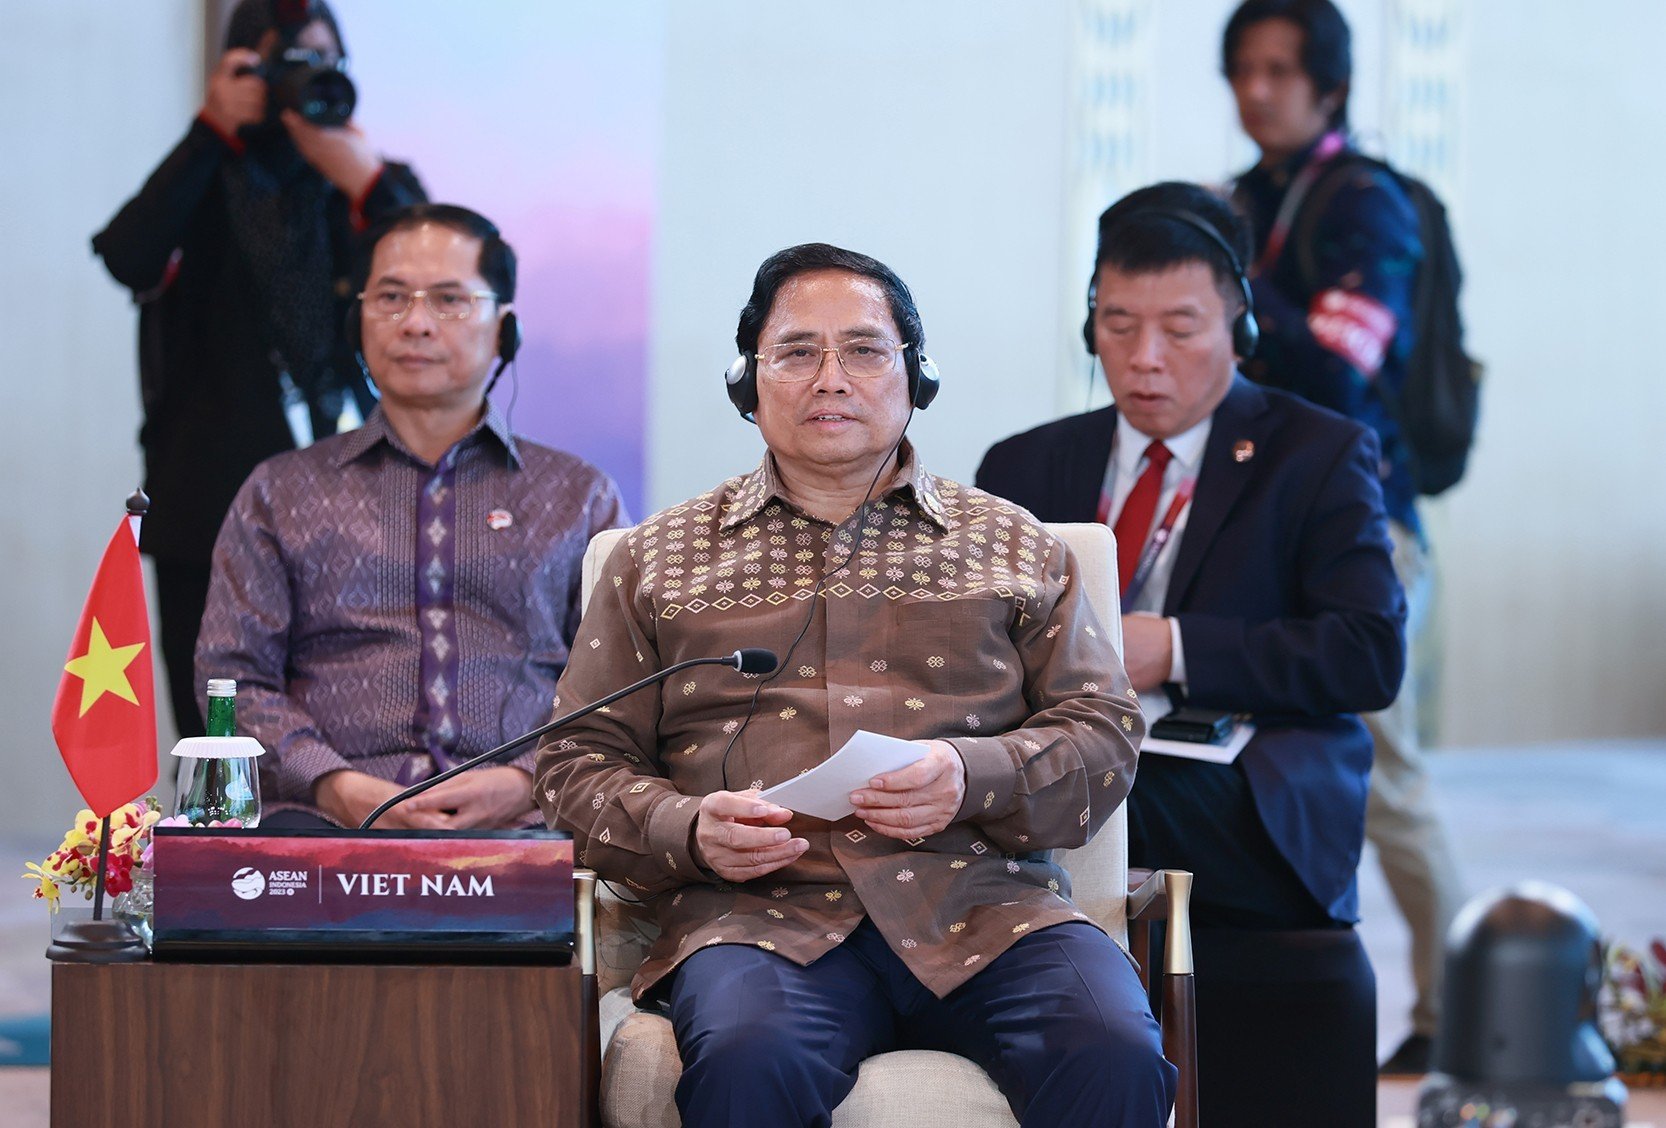 Sáng 11/5, Thủ tướng Phạm Minh Chính đã cùng lãnh đạo các nước dự phiên họp hẹp trao đổi về các vấn đề quốc tế và khu vực.